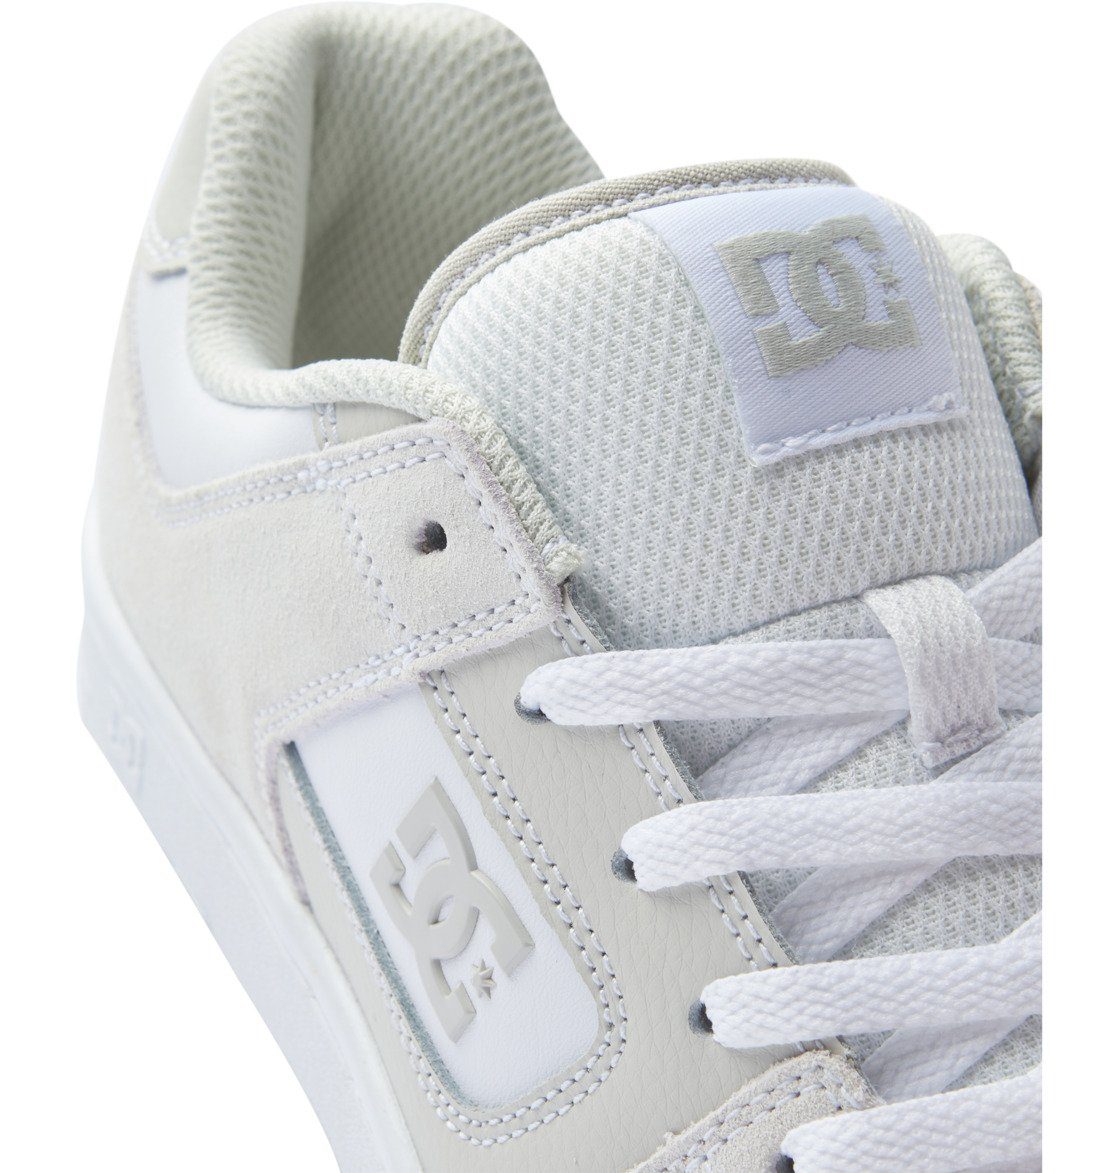 Grey/ White Shoes Manteca Sneaker DC